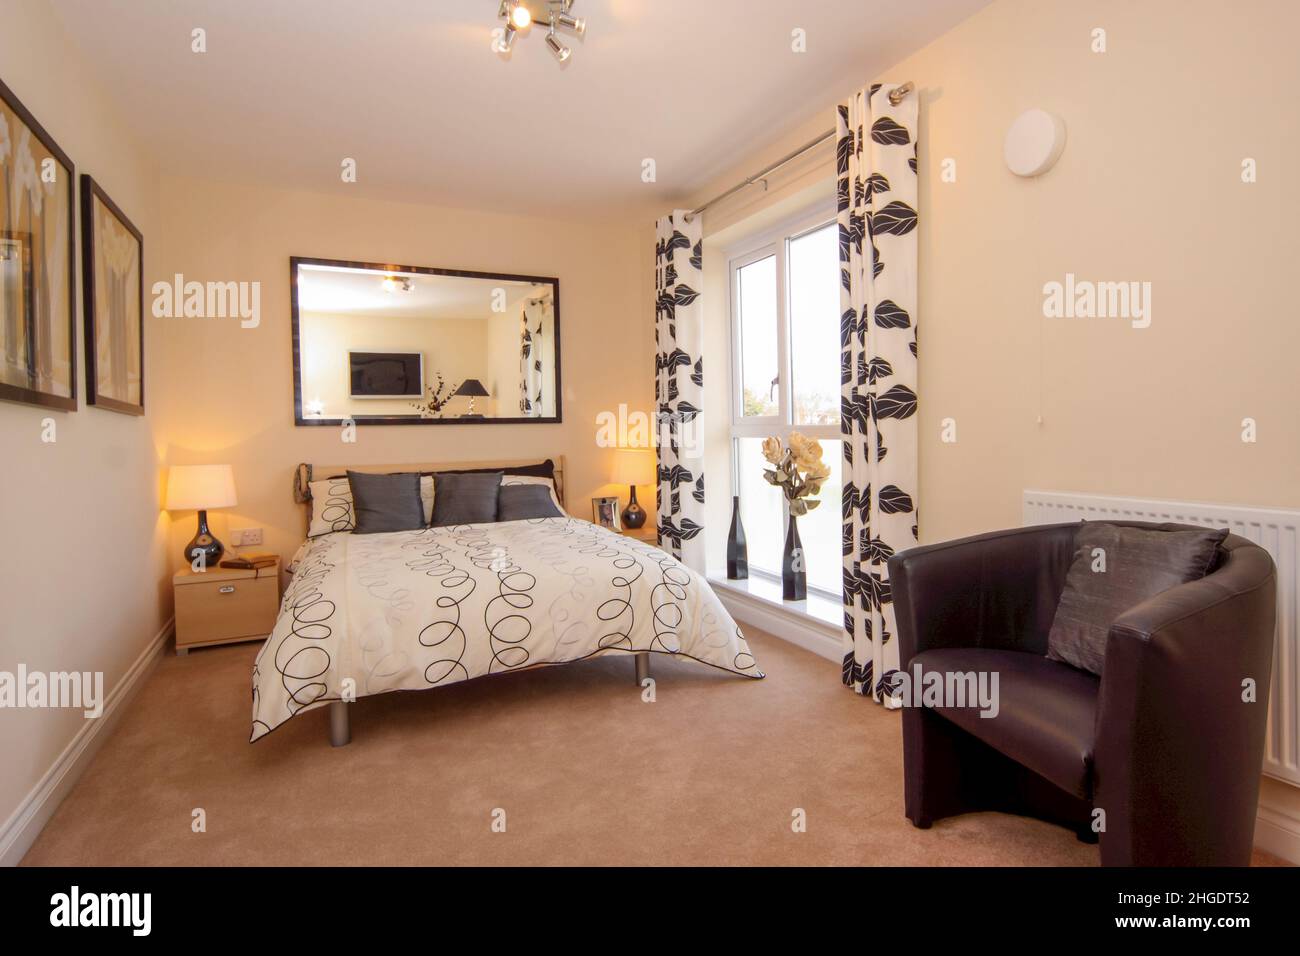 Dormitorio en tonos neutros, cama doble king size, bajo alféizar, cortinas con diseño de hojas, espejo de pared, alfombra beige. Foto de stock